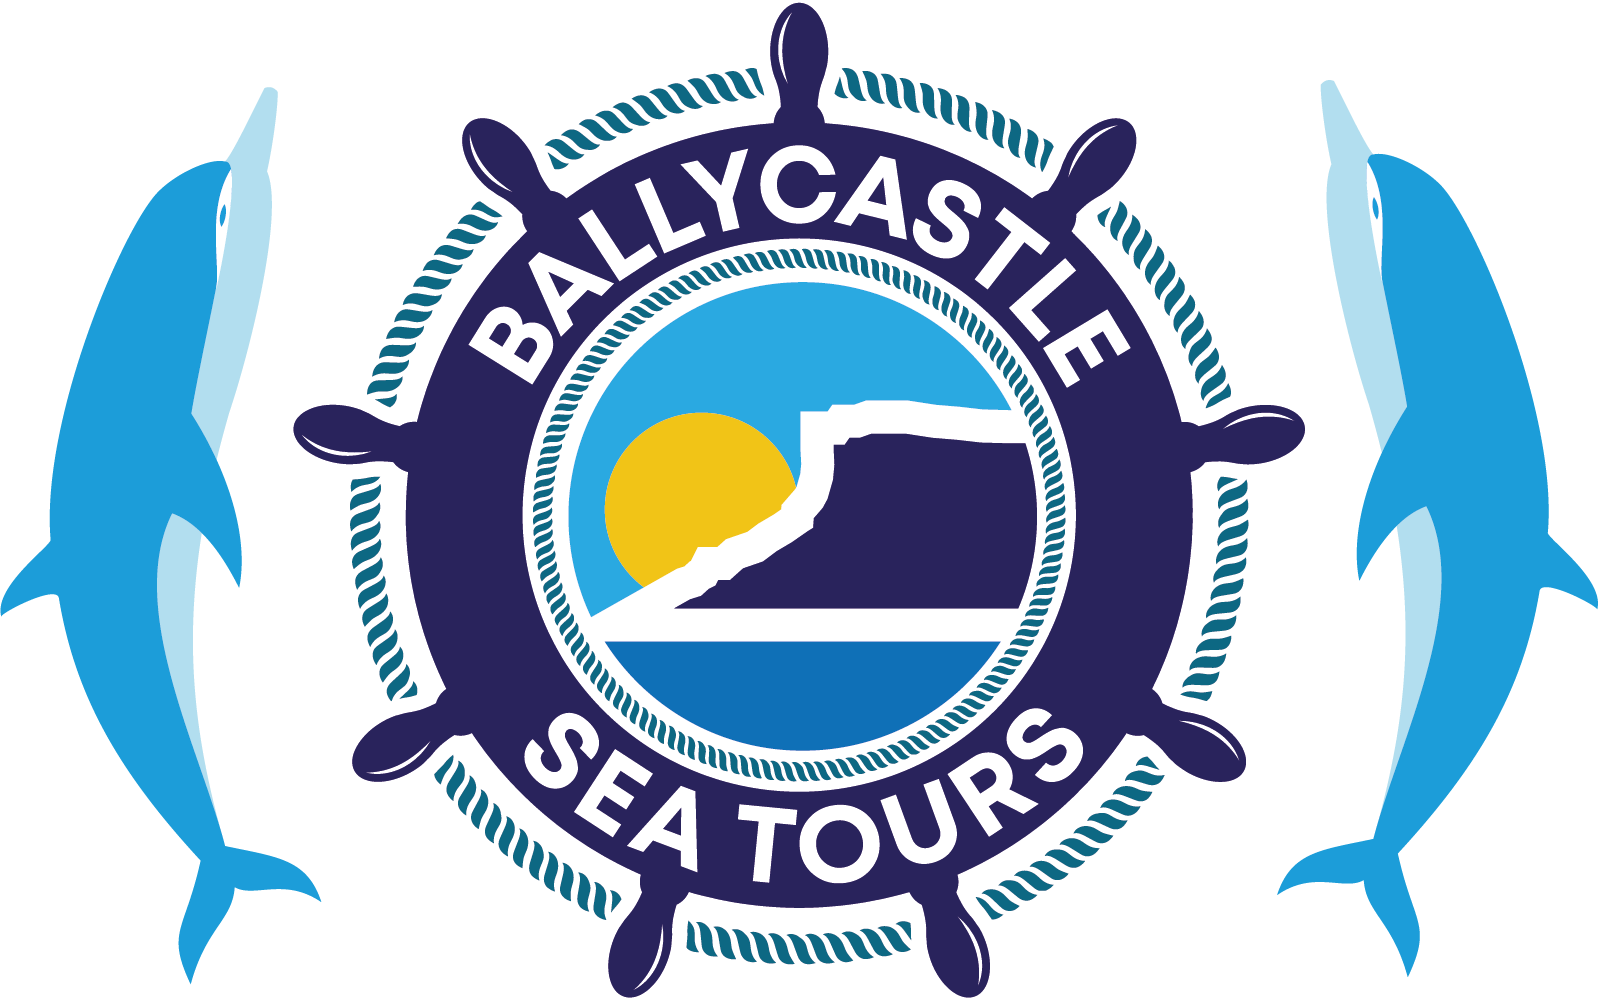 Ballycastle Sea Tours